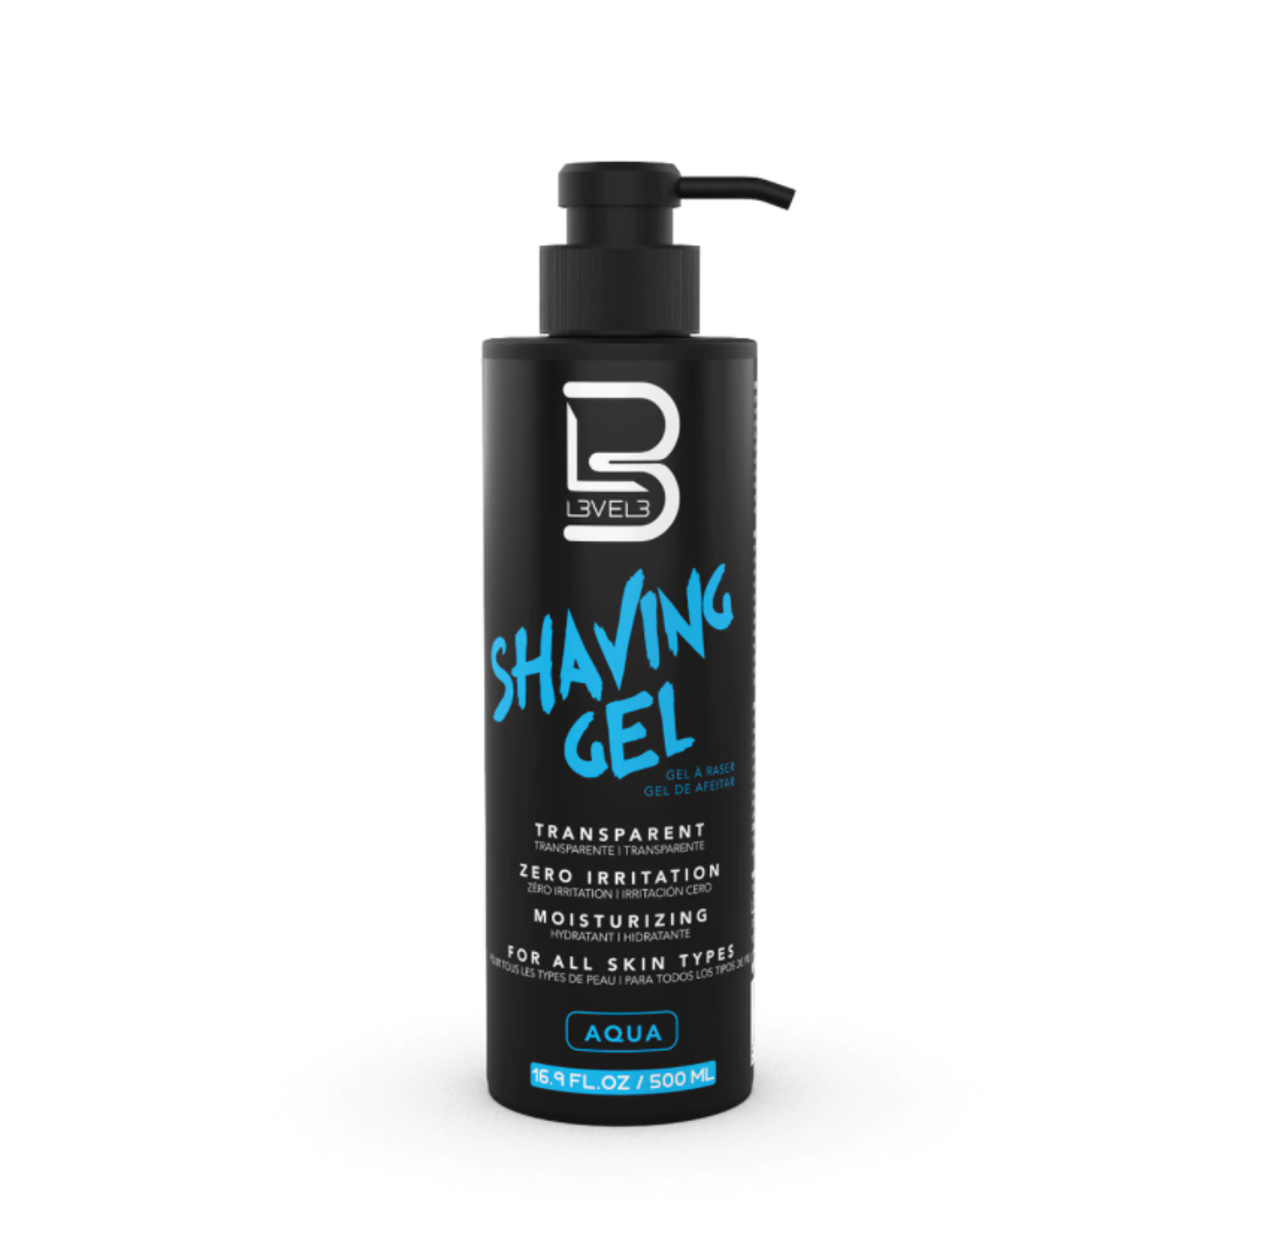 Level3 Shaving Gel - Aqua